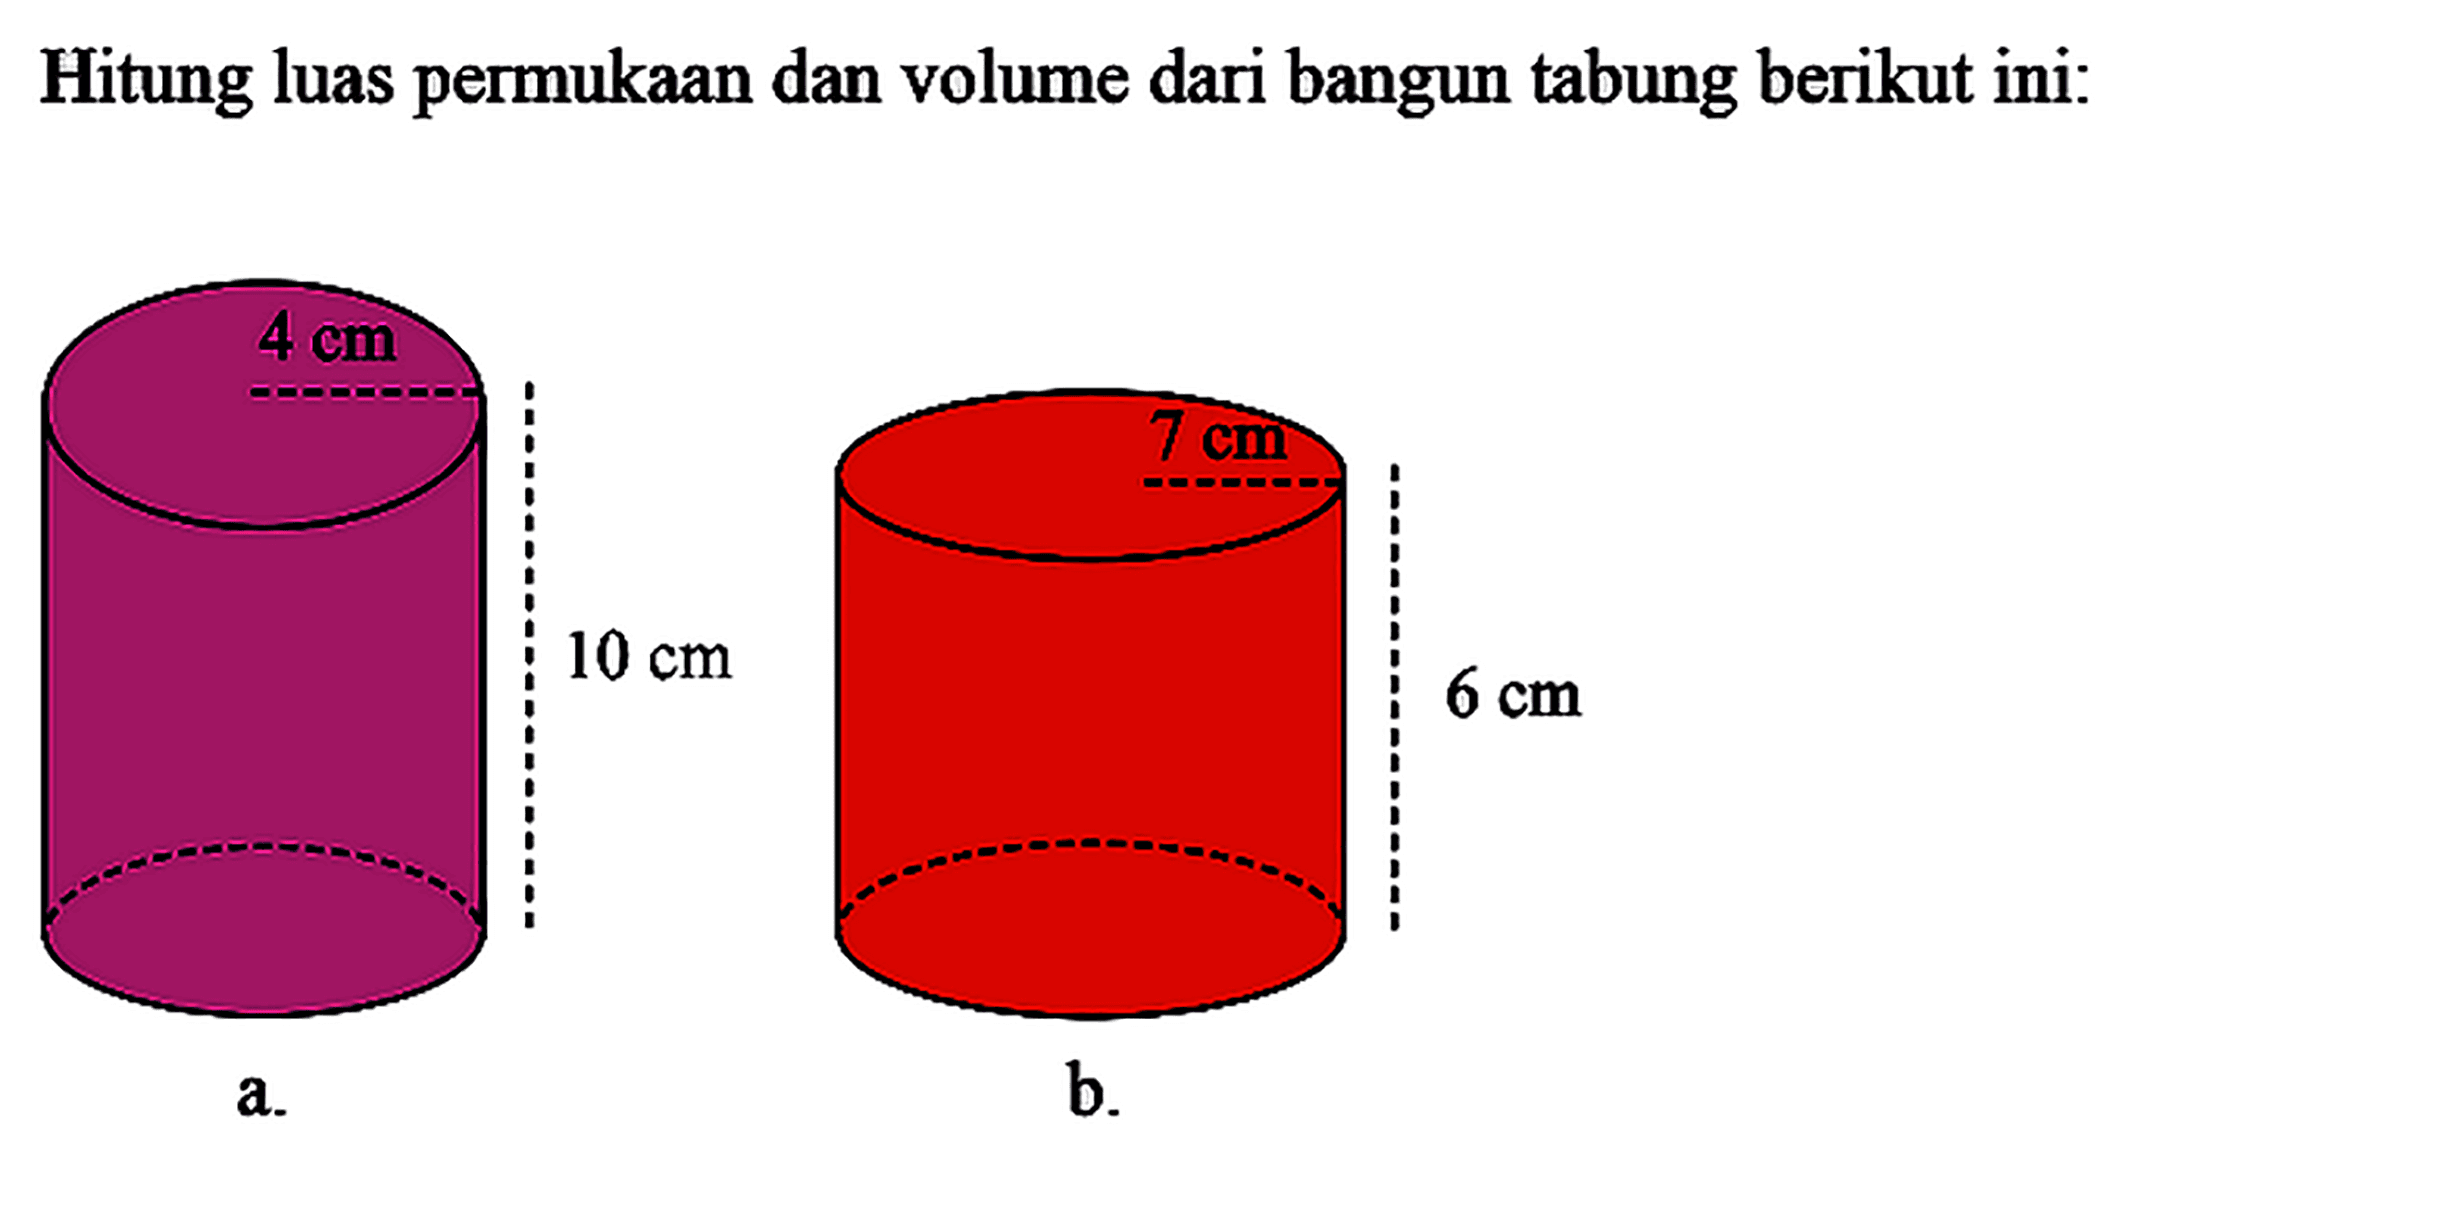 Hitung luas permukaan dan volume dari bangun tabung berikut ini: